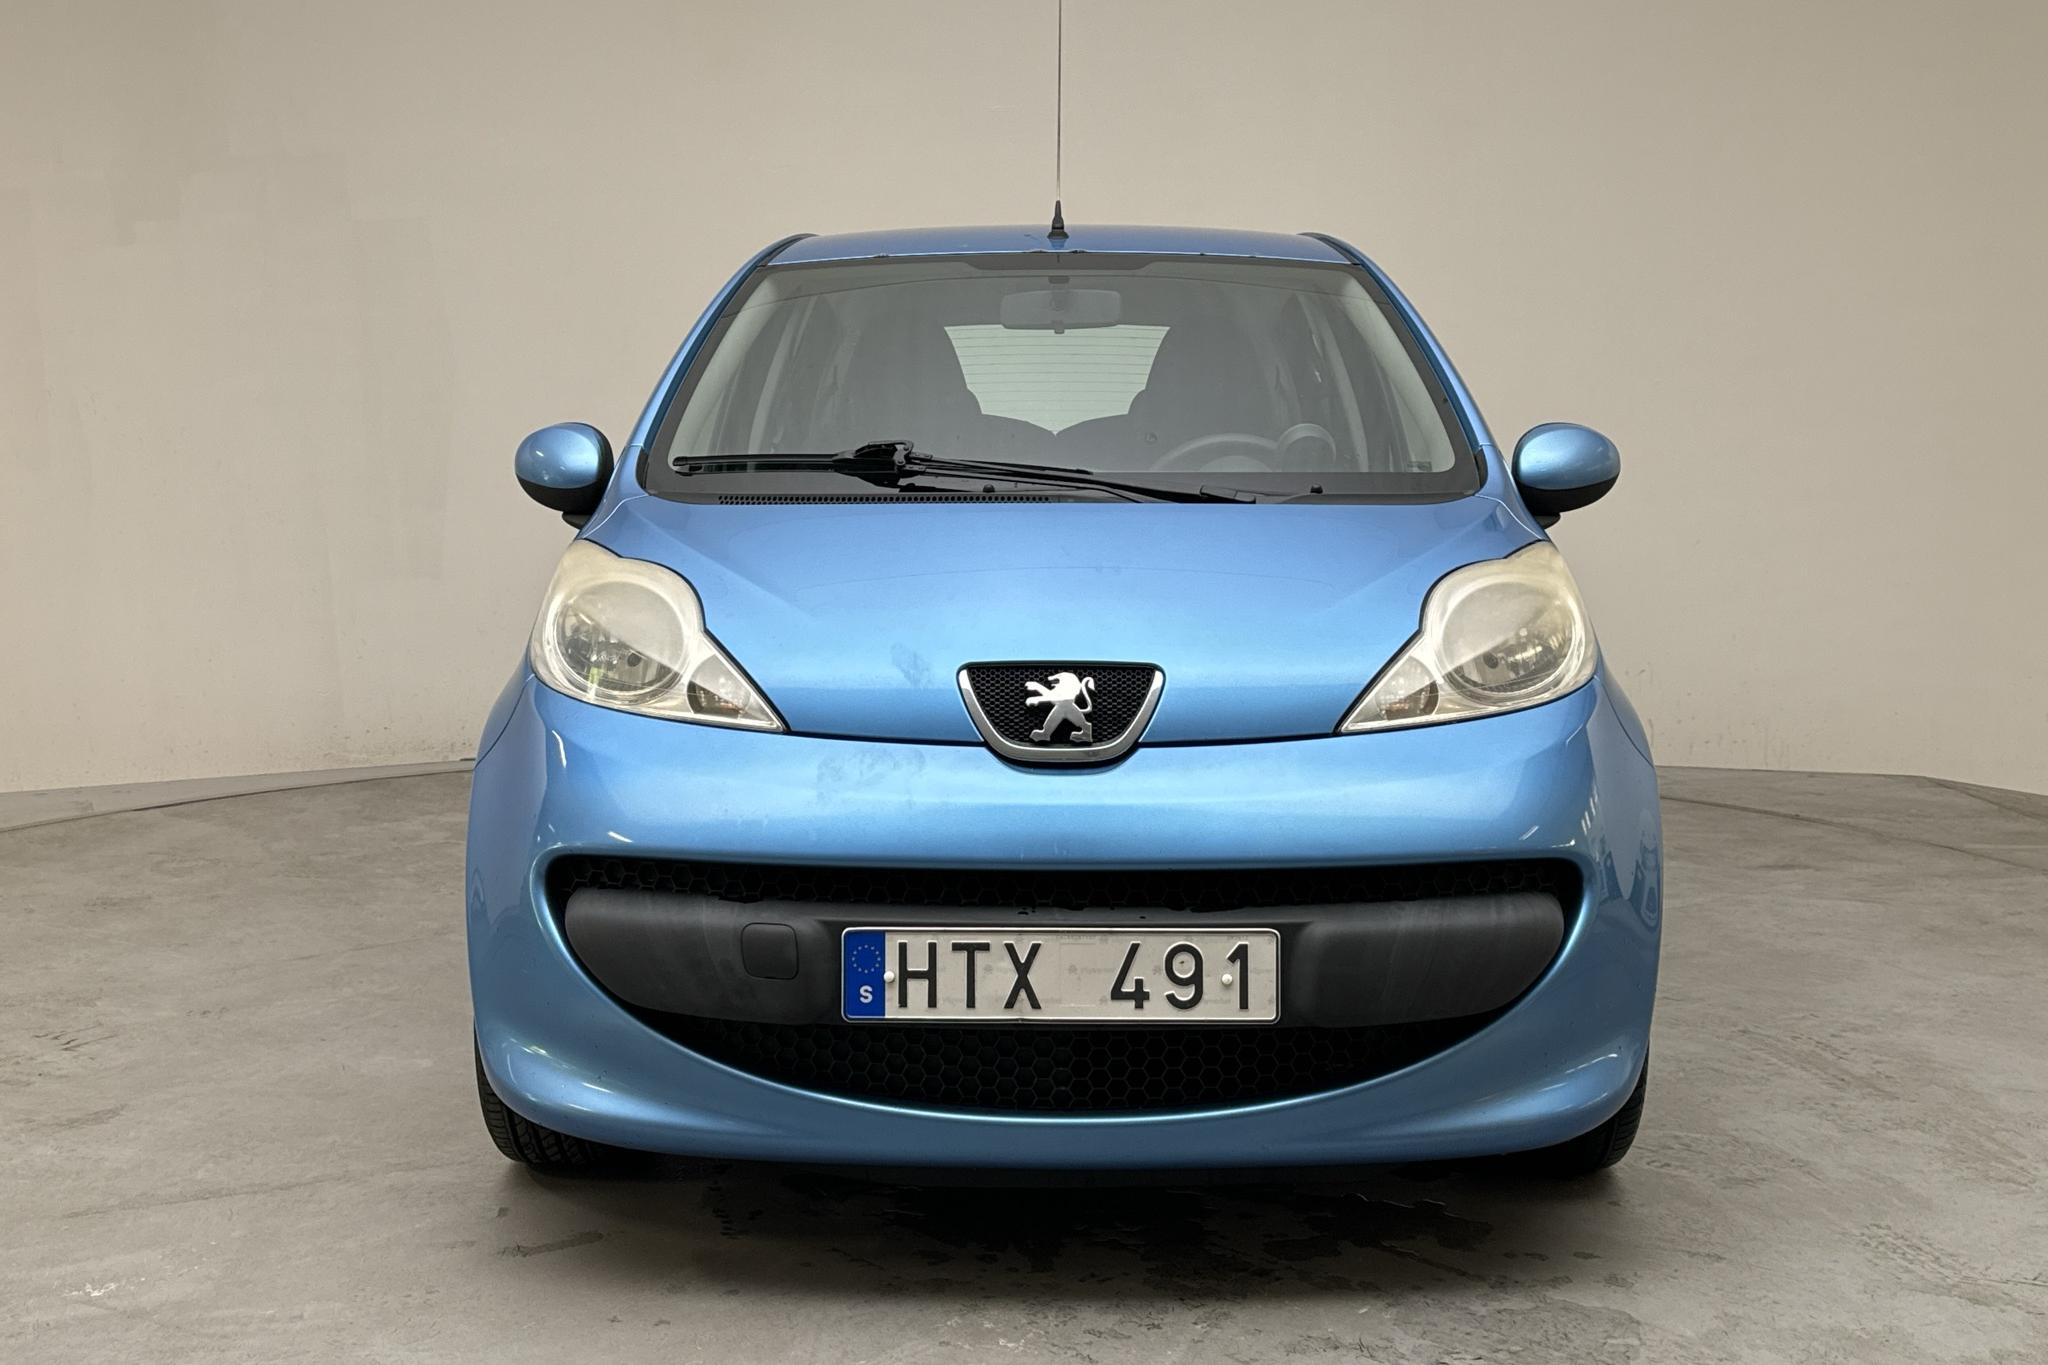 Peugeot 107 1.0 5dr (68hk) - 116 230 km - Manual - Light Blue - 2009